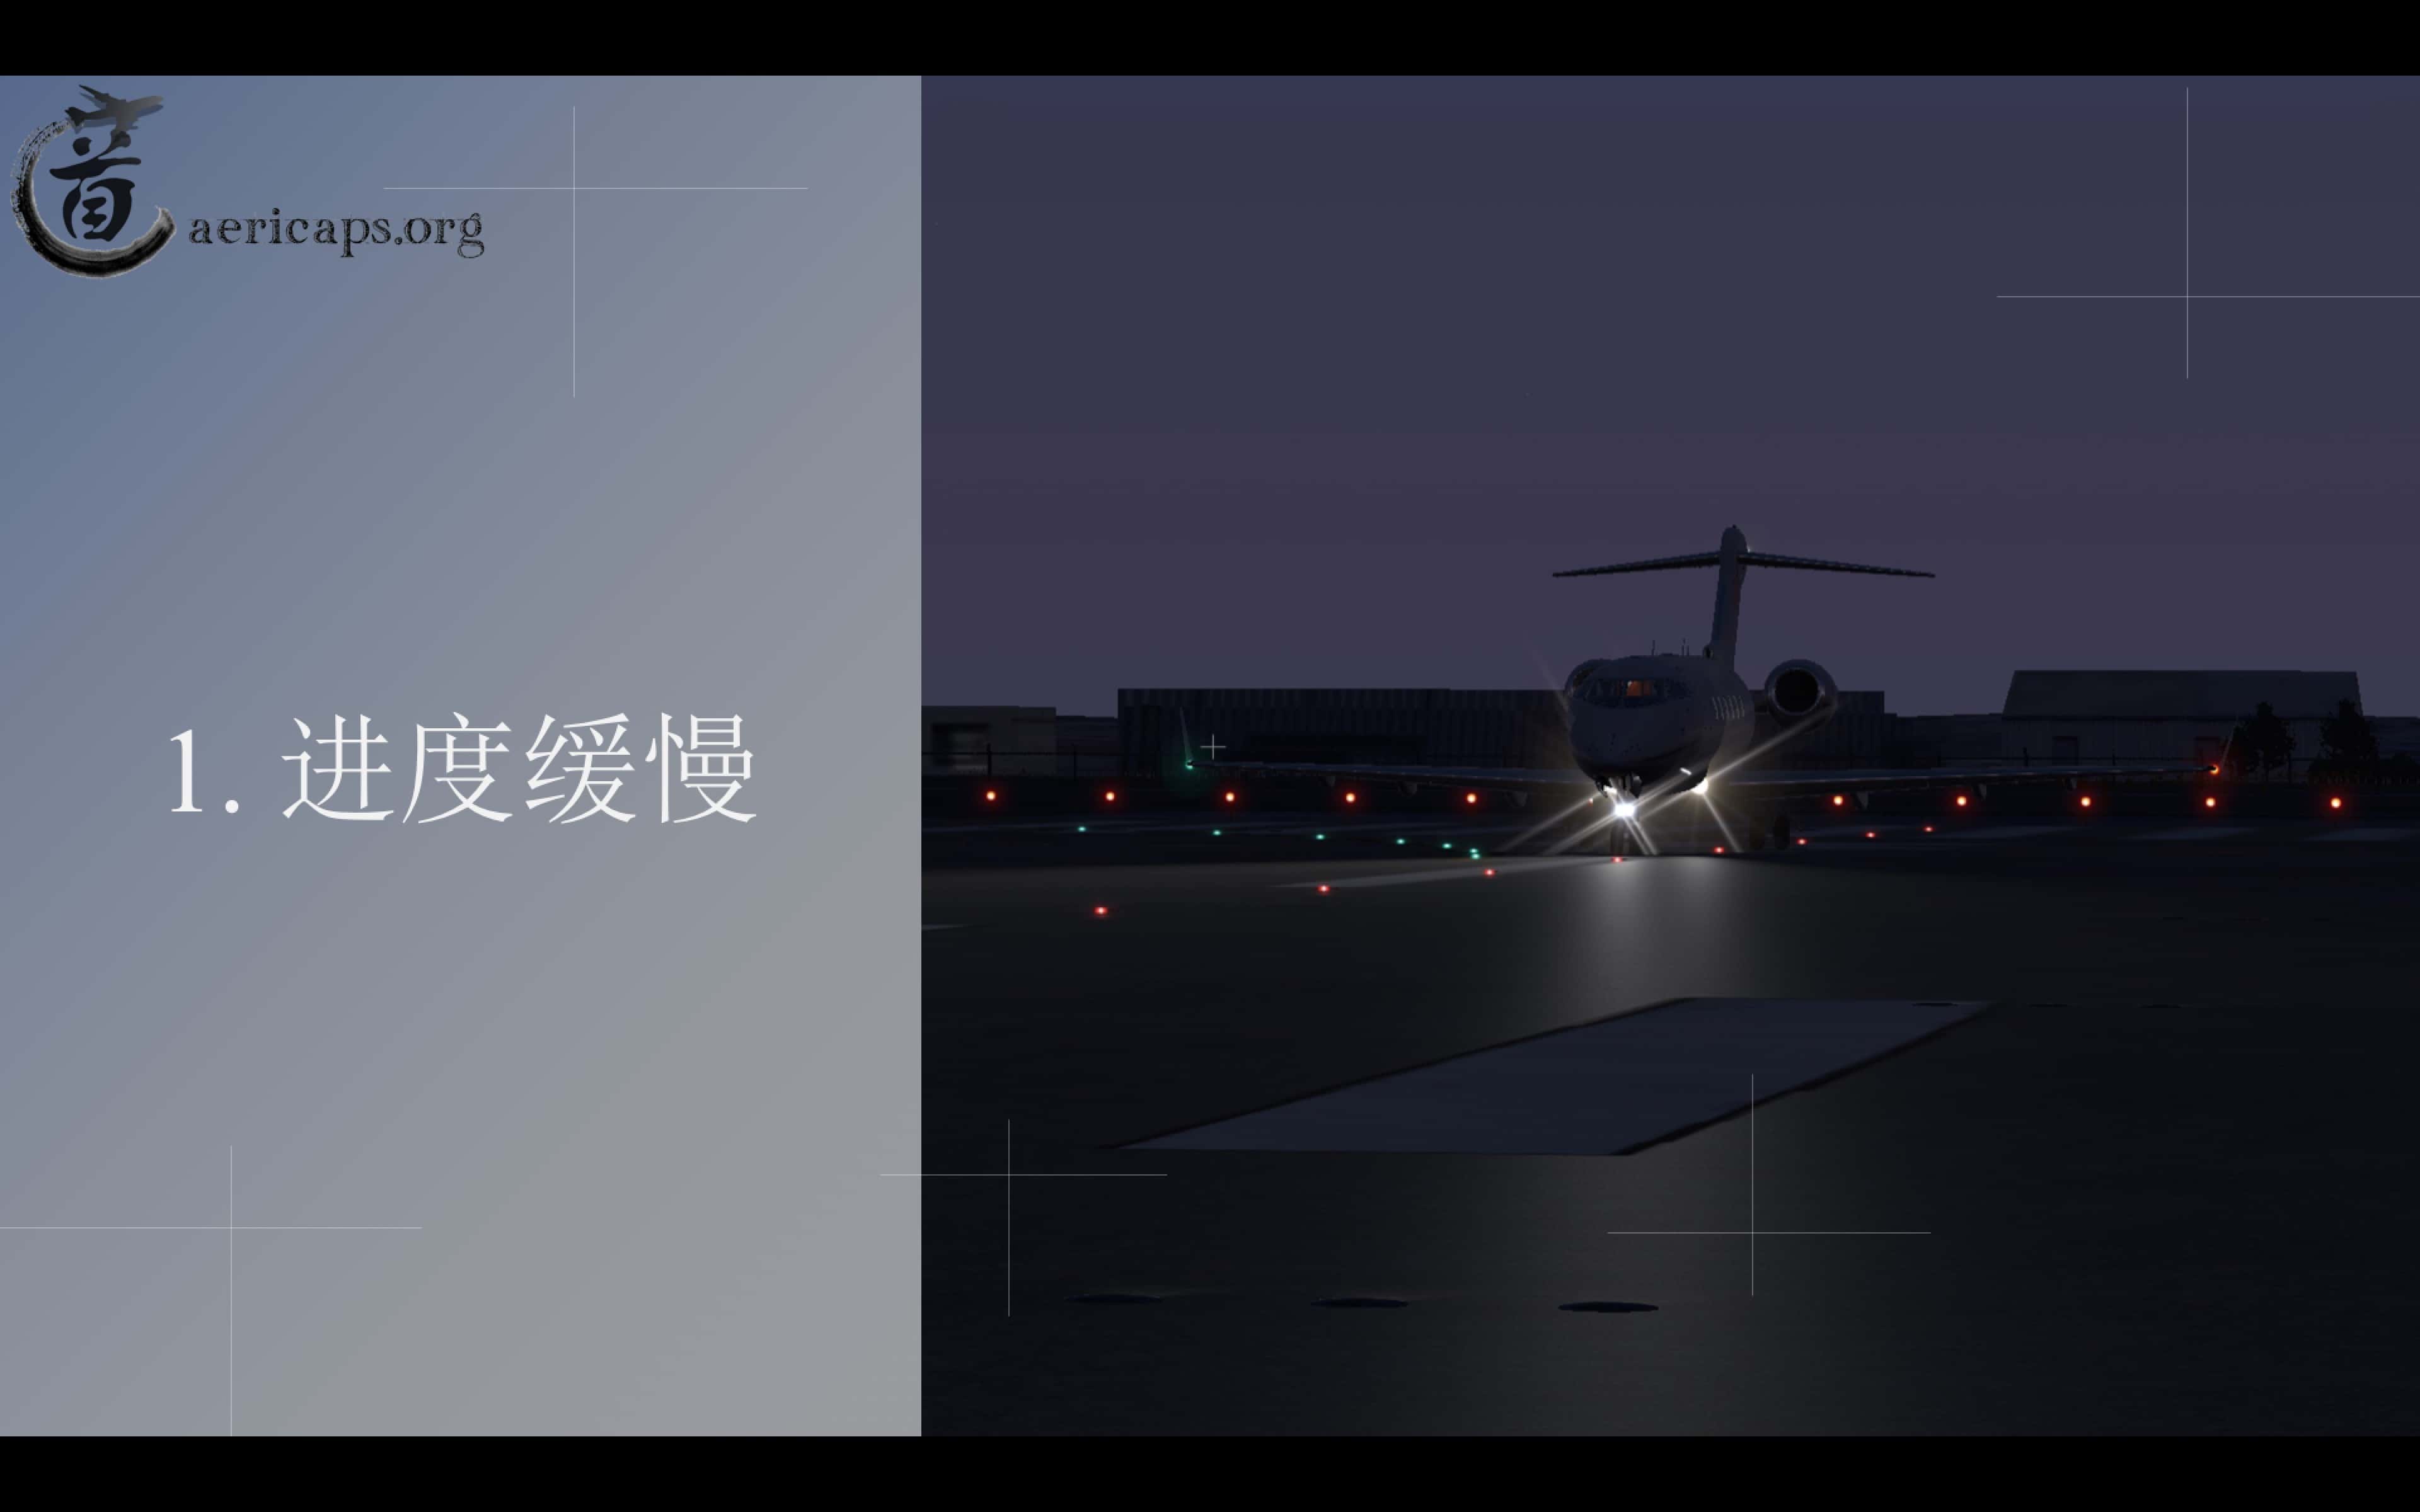 【预告】北京南苑机场地景宣传册-最终版-8632 